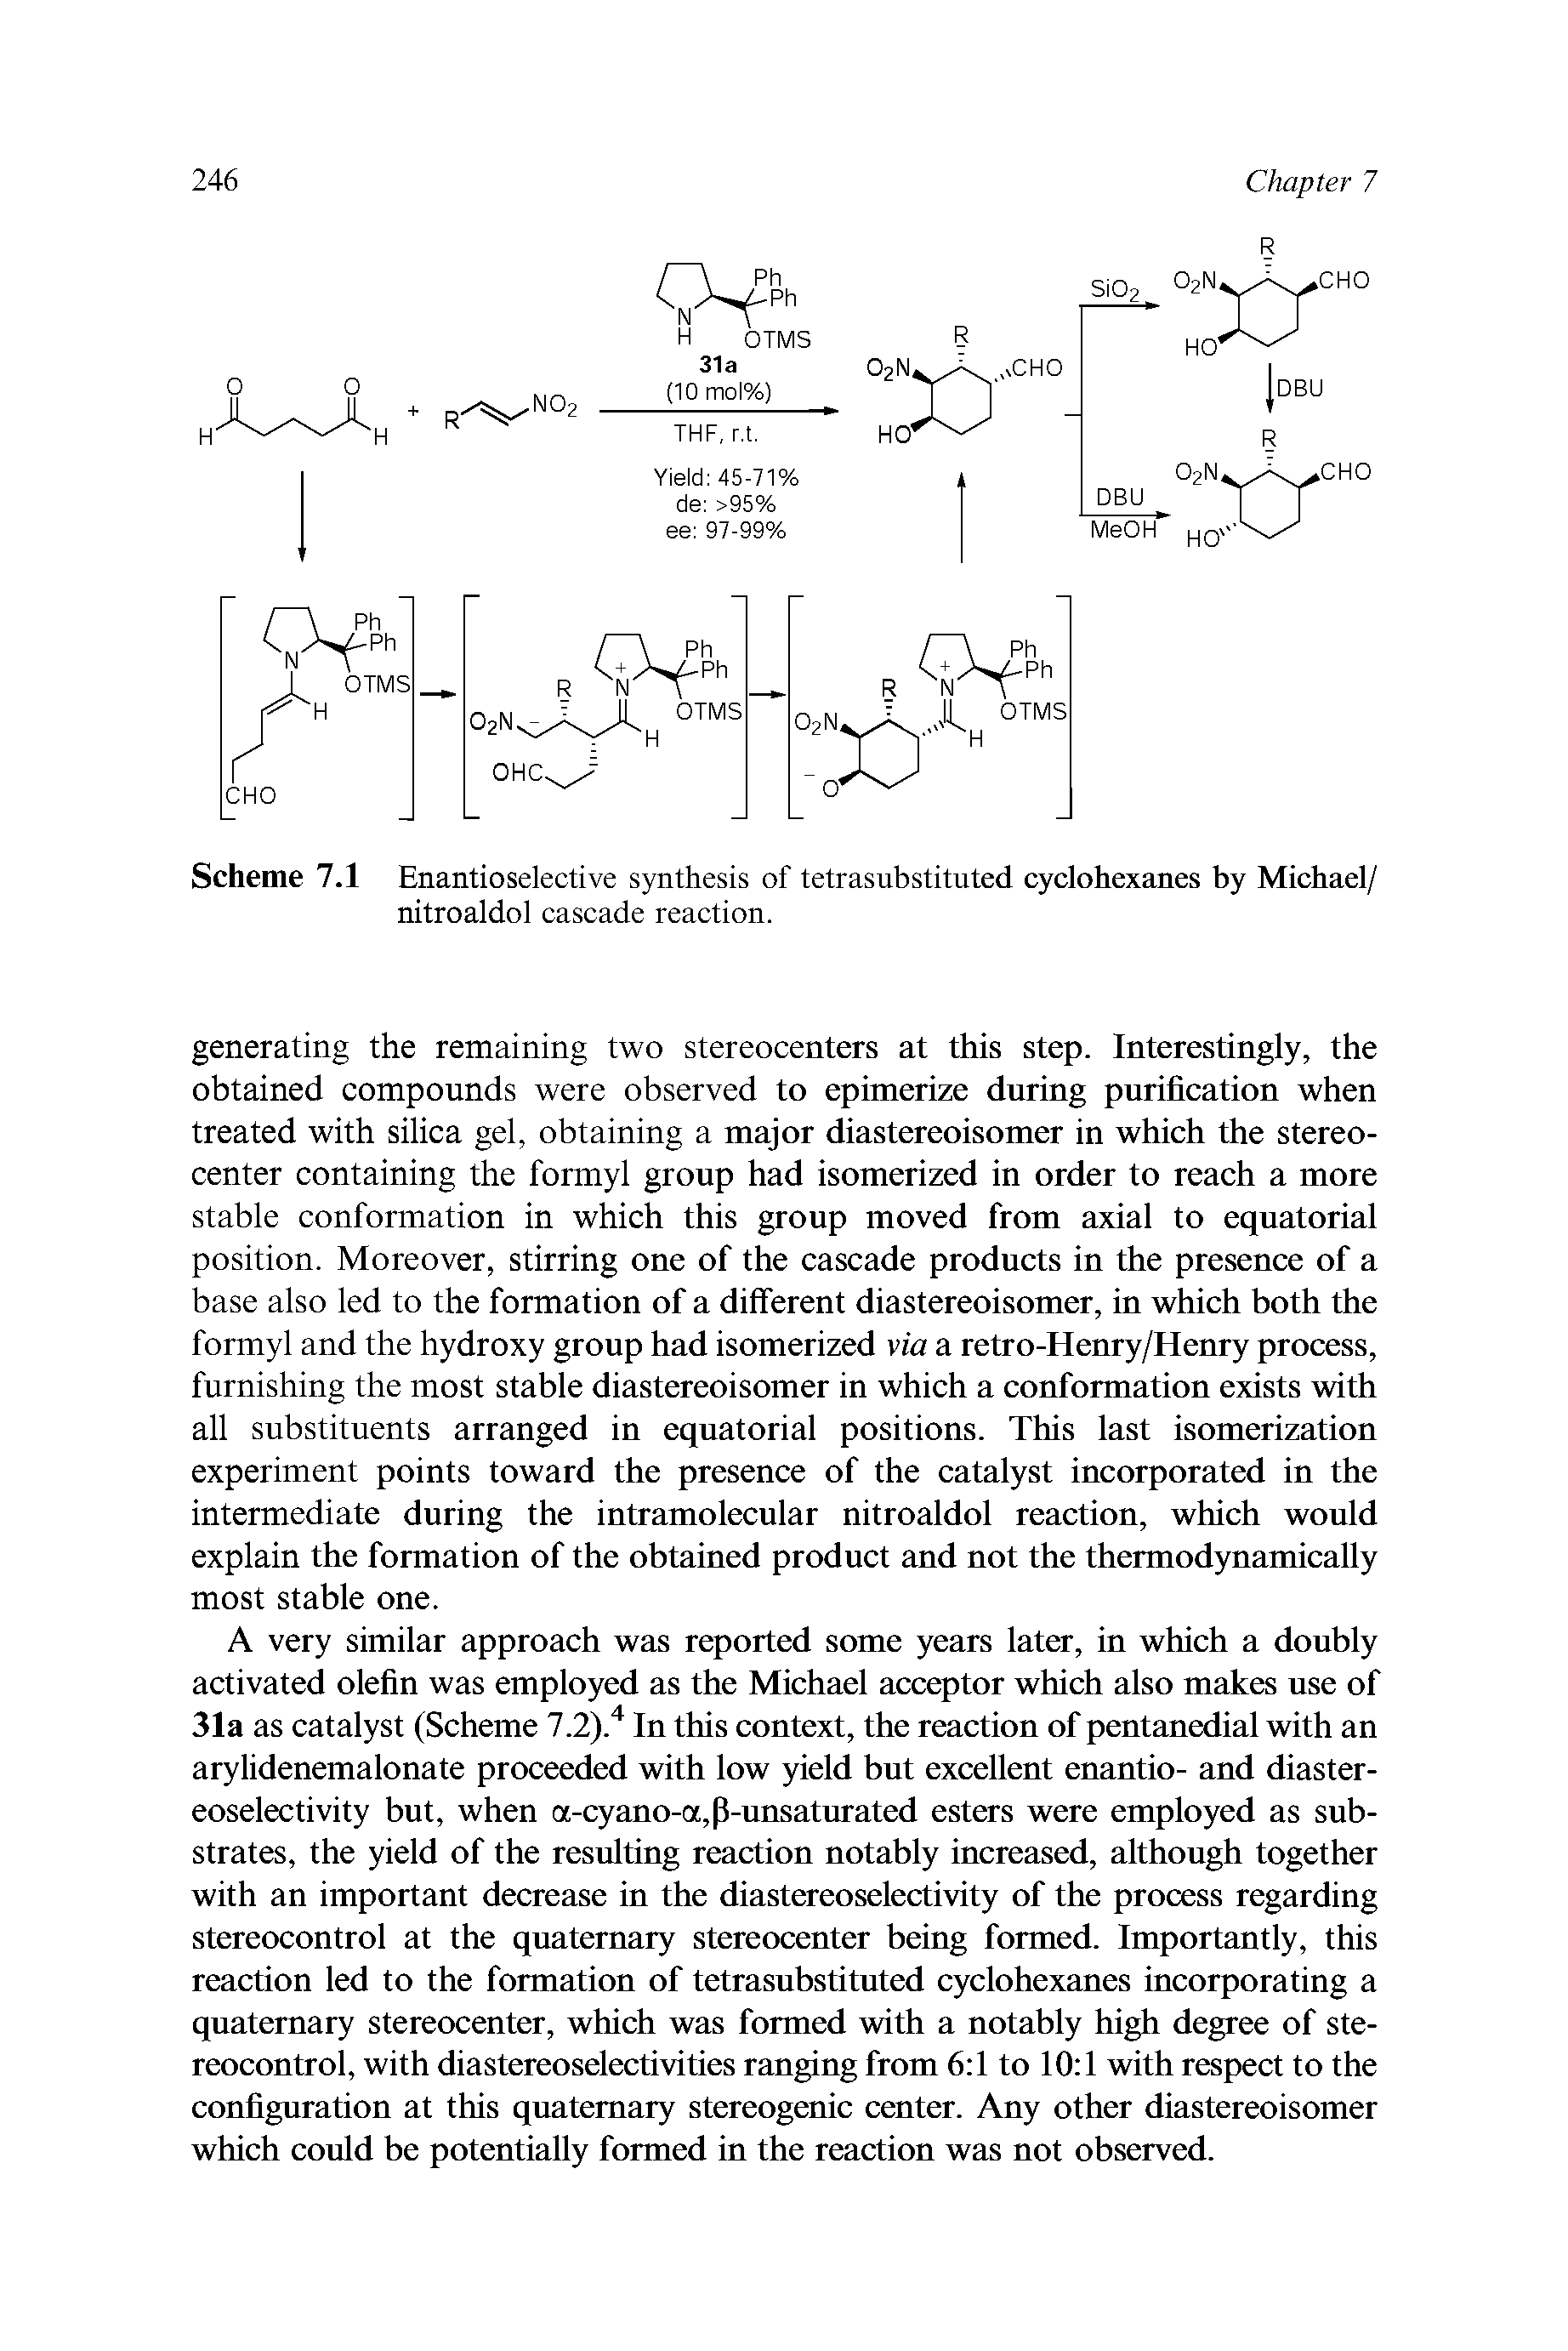 Scheme 7.1 Enantioselective synthesis of tetrasubstituted cyclohexanes by Michael/ nitroaldol cascade reaction.